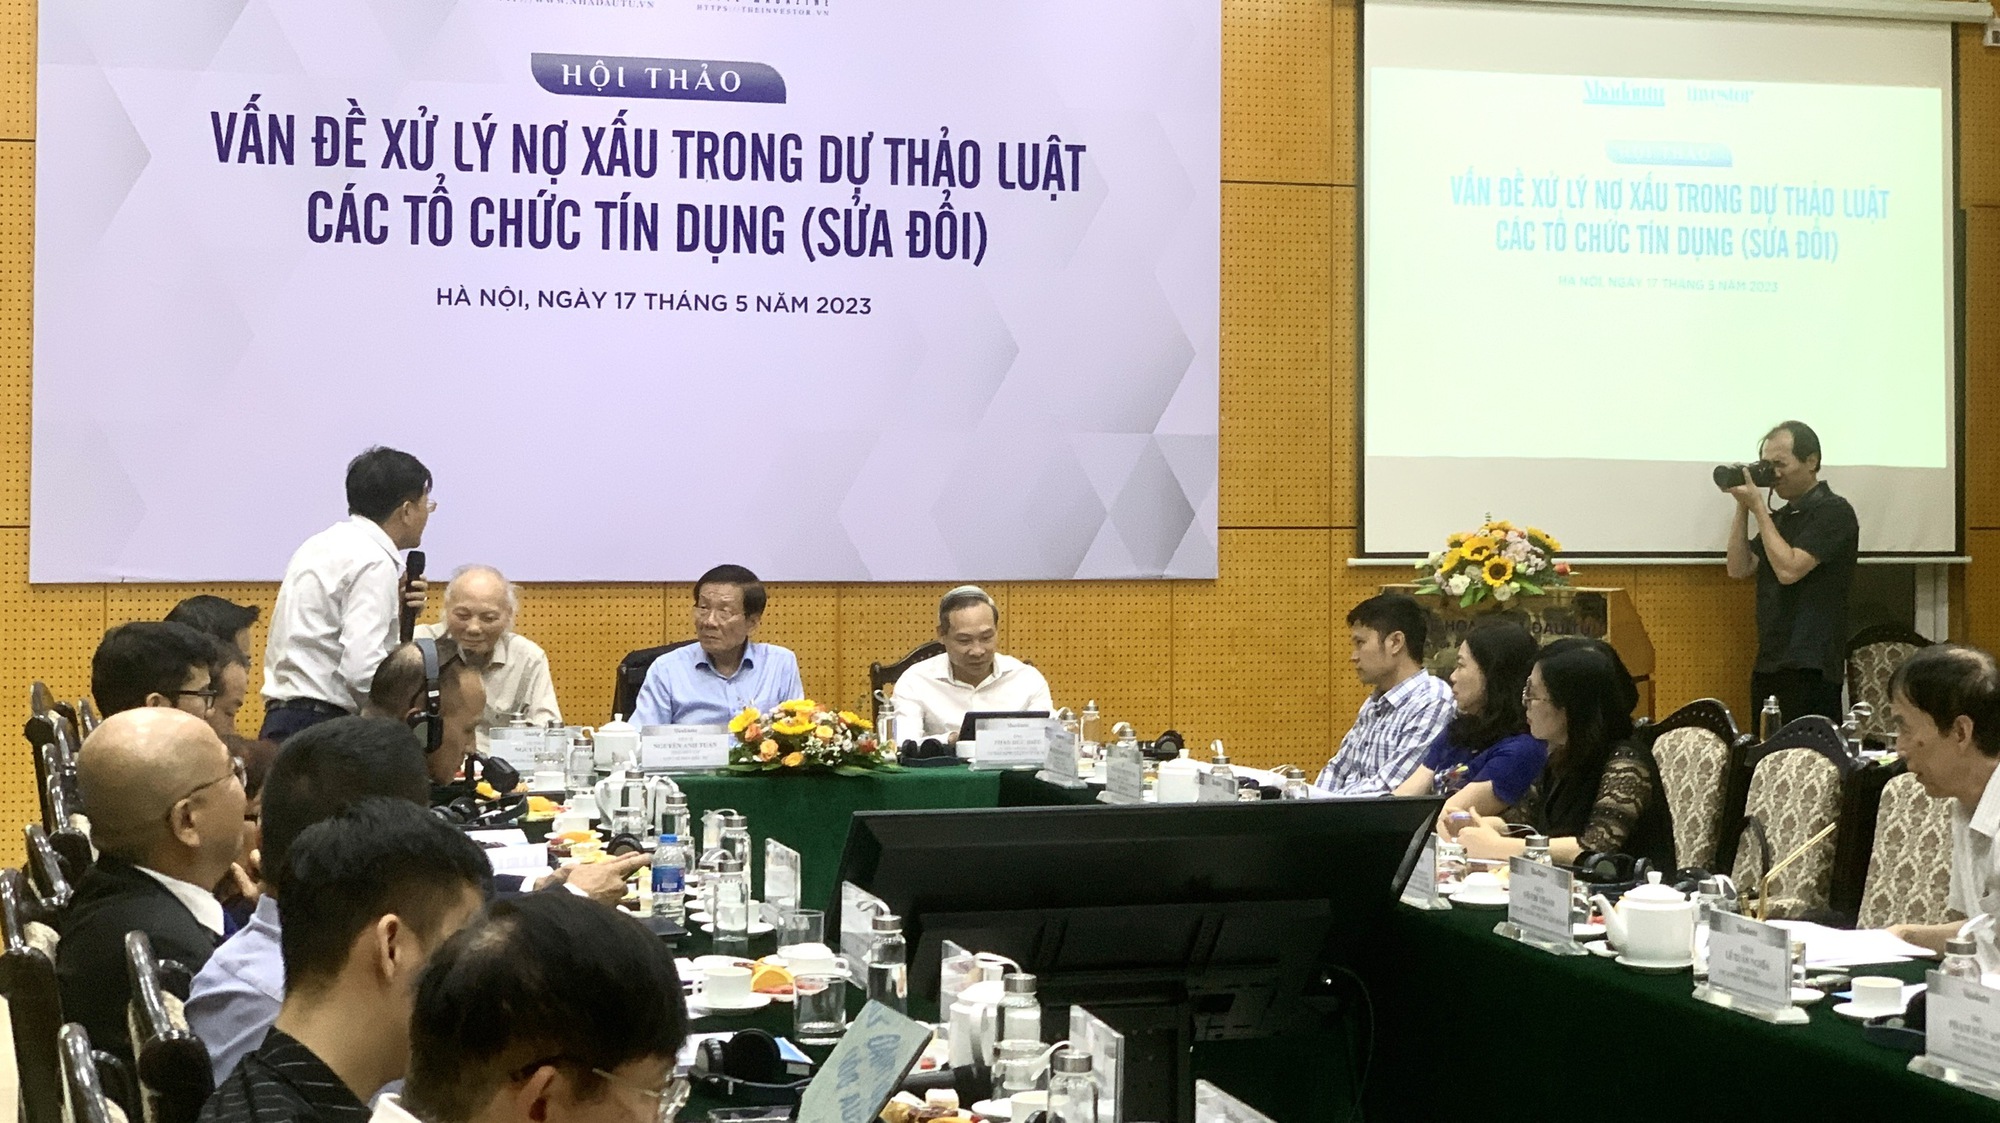 Khung pháp lý về xử lý nợ xấu của các tổ chức tín dụng tại Việt Nam hiện nay